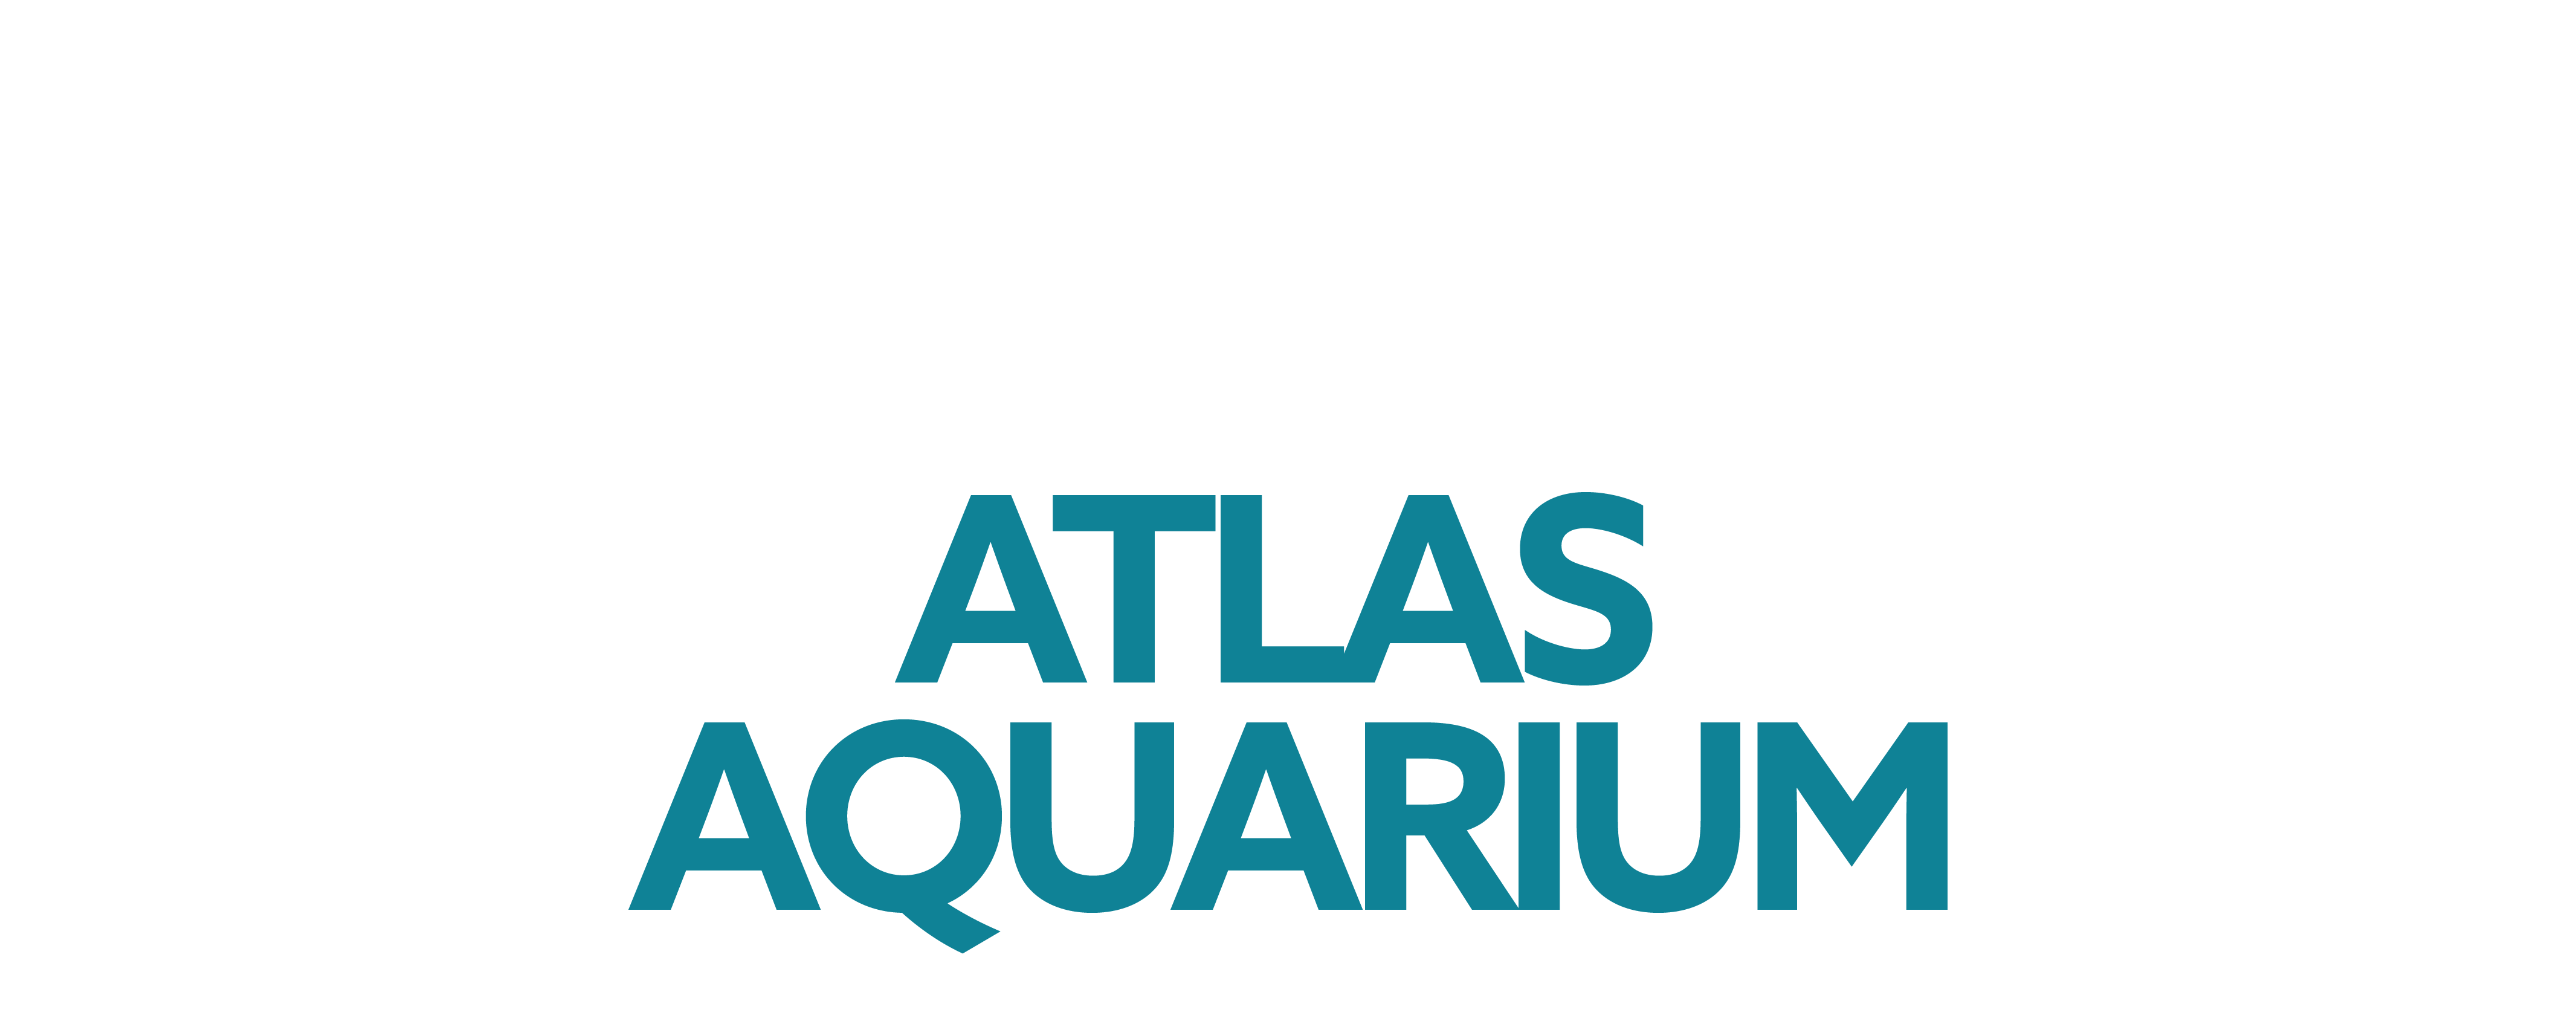 Atlas Aquarium